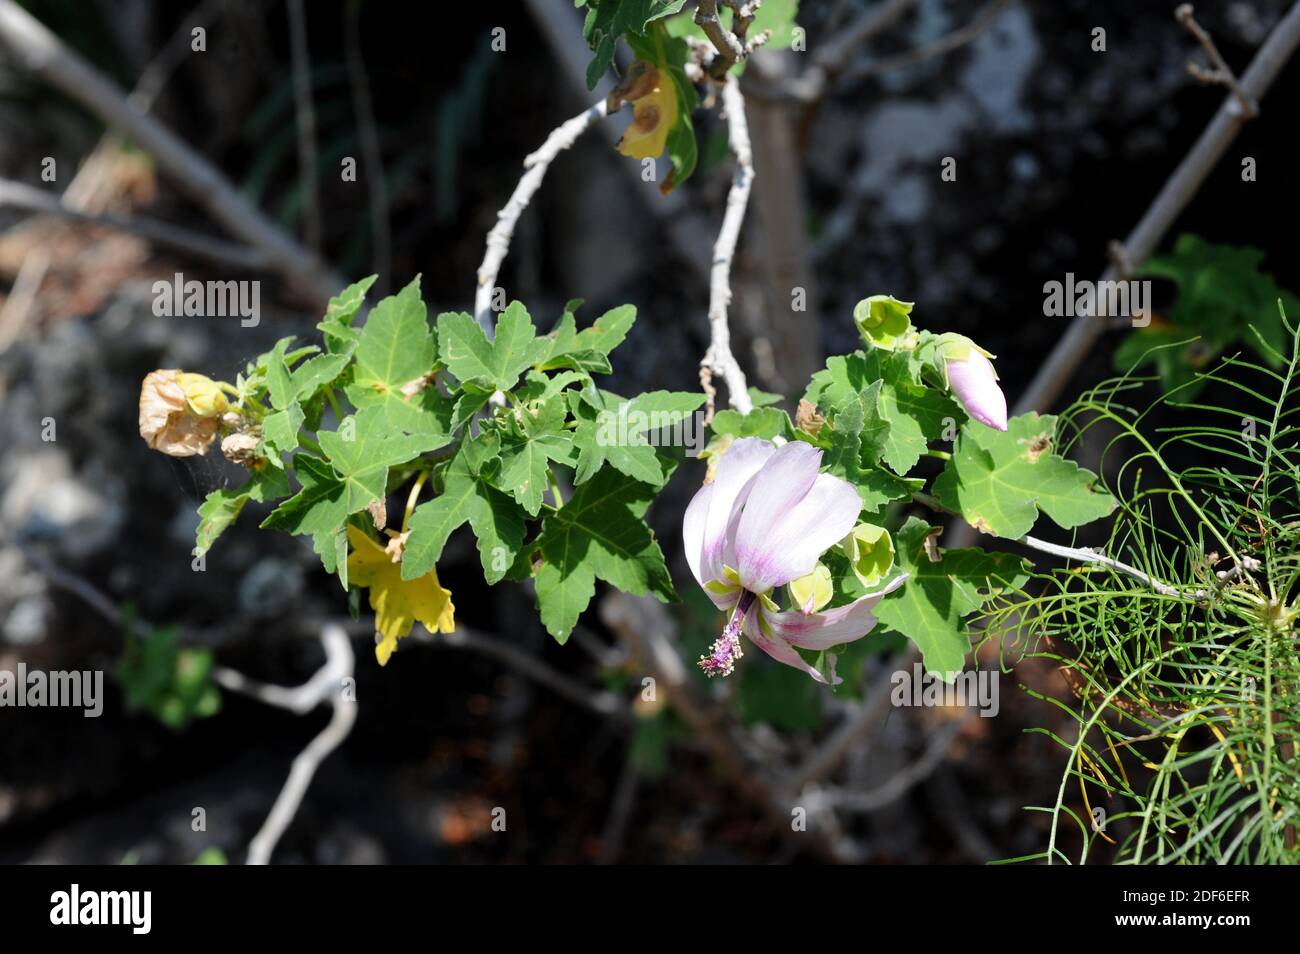 Malva de risco (Lavatera acerifolia) es un arbusto endémico de las Islas de Canry, España. Detalle de hojas y flores. Foto de stock